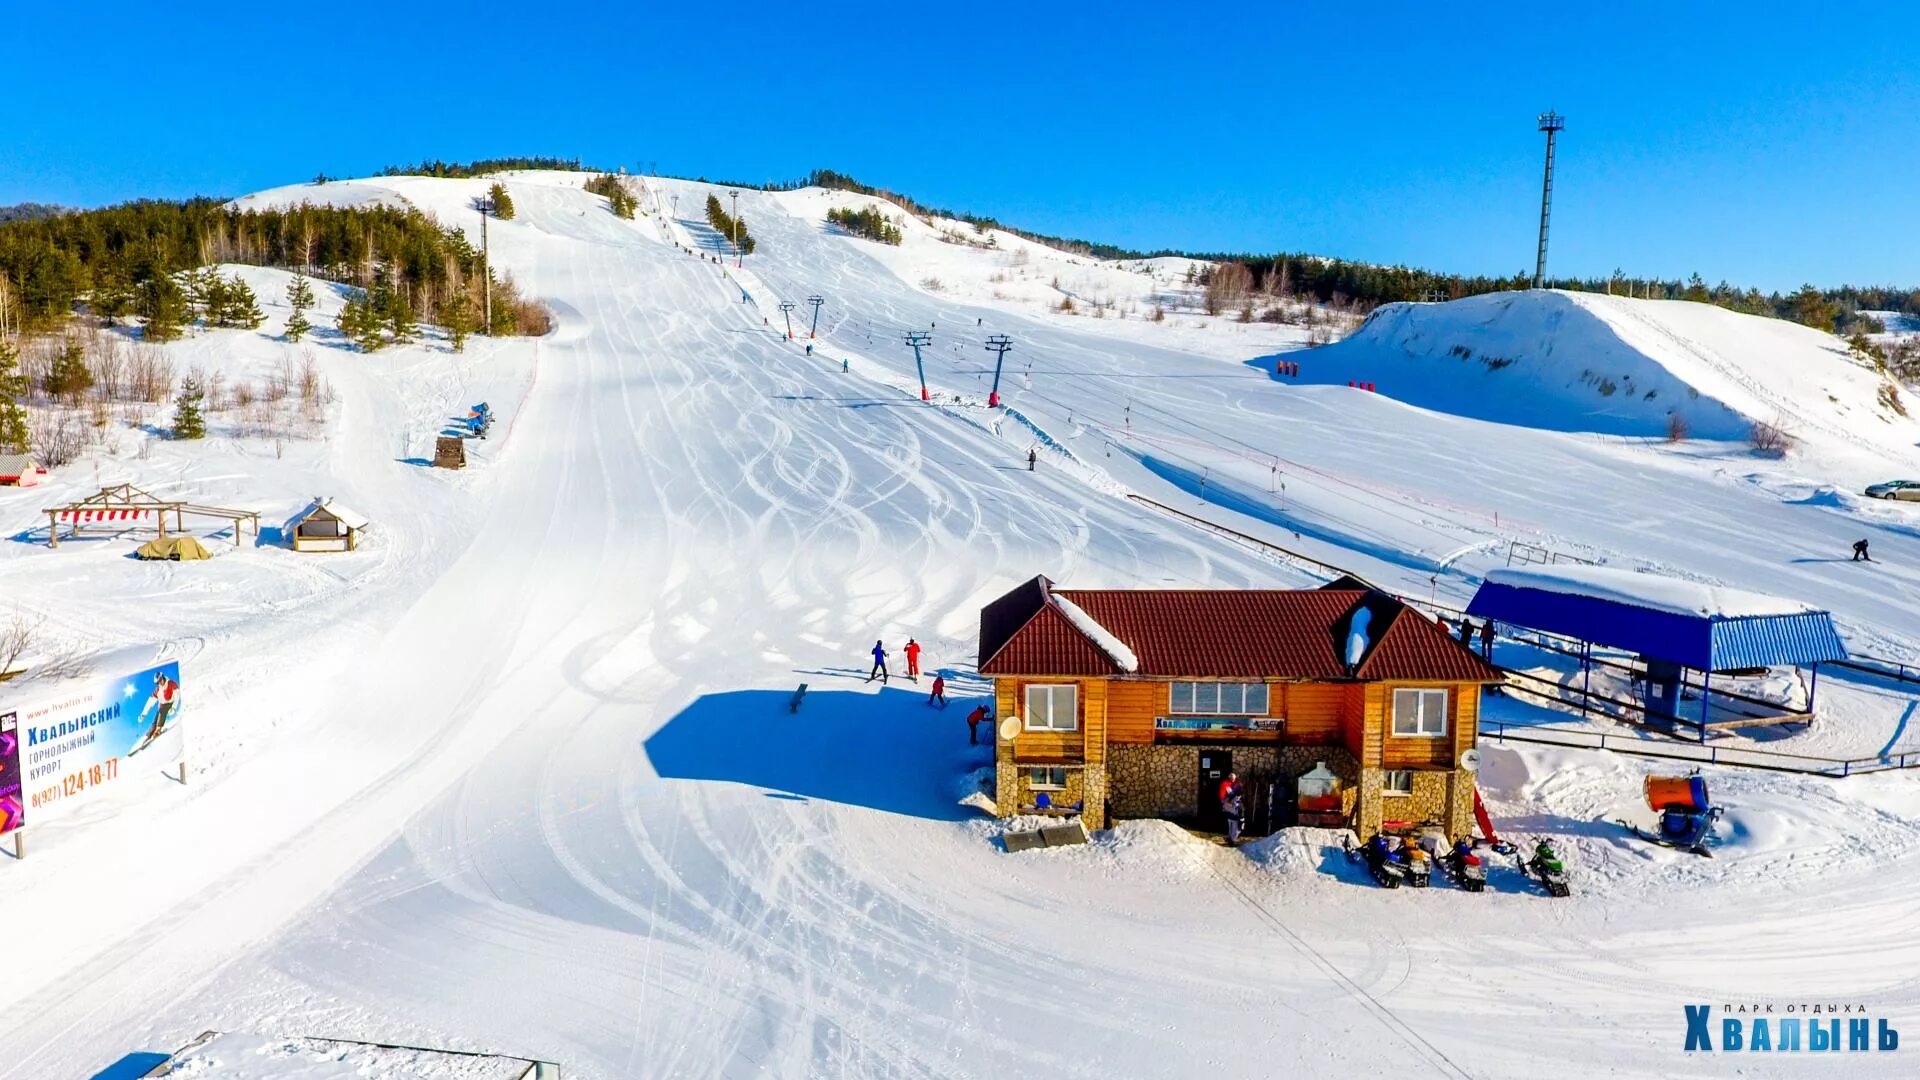 Сайт горнолыжного курорта хвалынск. Хвалынь горнолыжный курорт. Хвалынь, Хвалынск. Хвалынск горнолыжный курорт. Хвалынь горнолыжный комплекс.